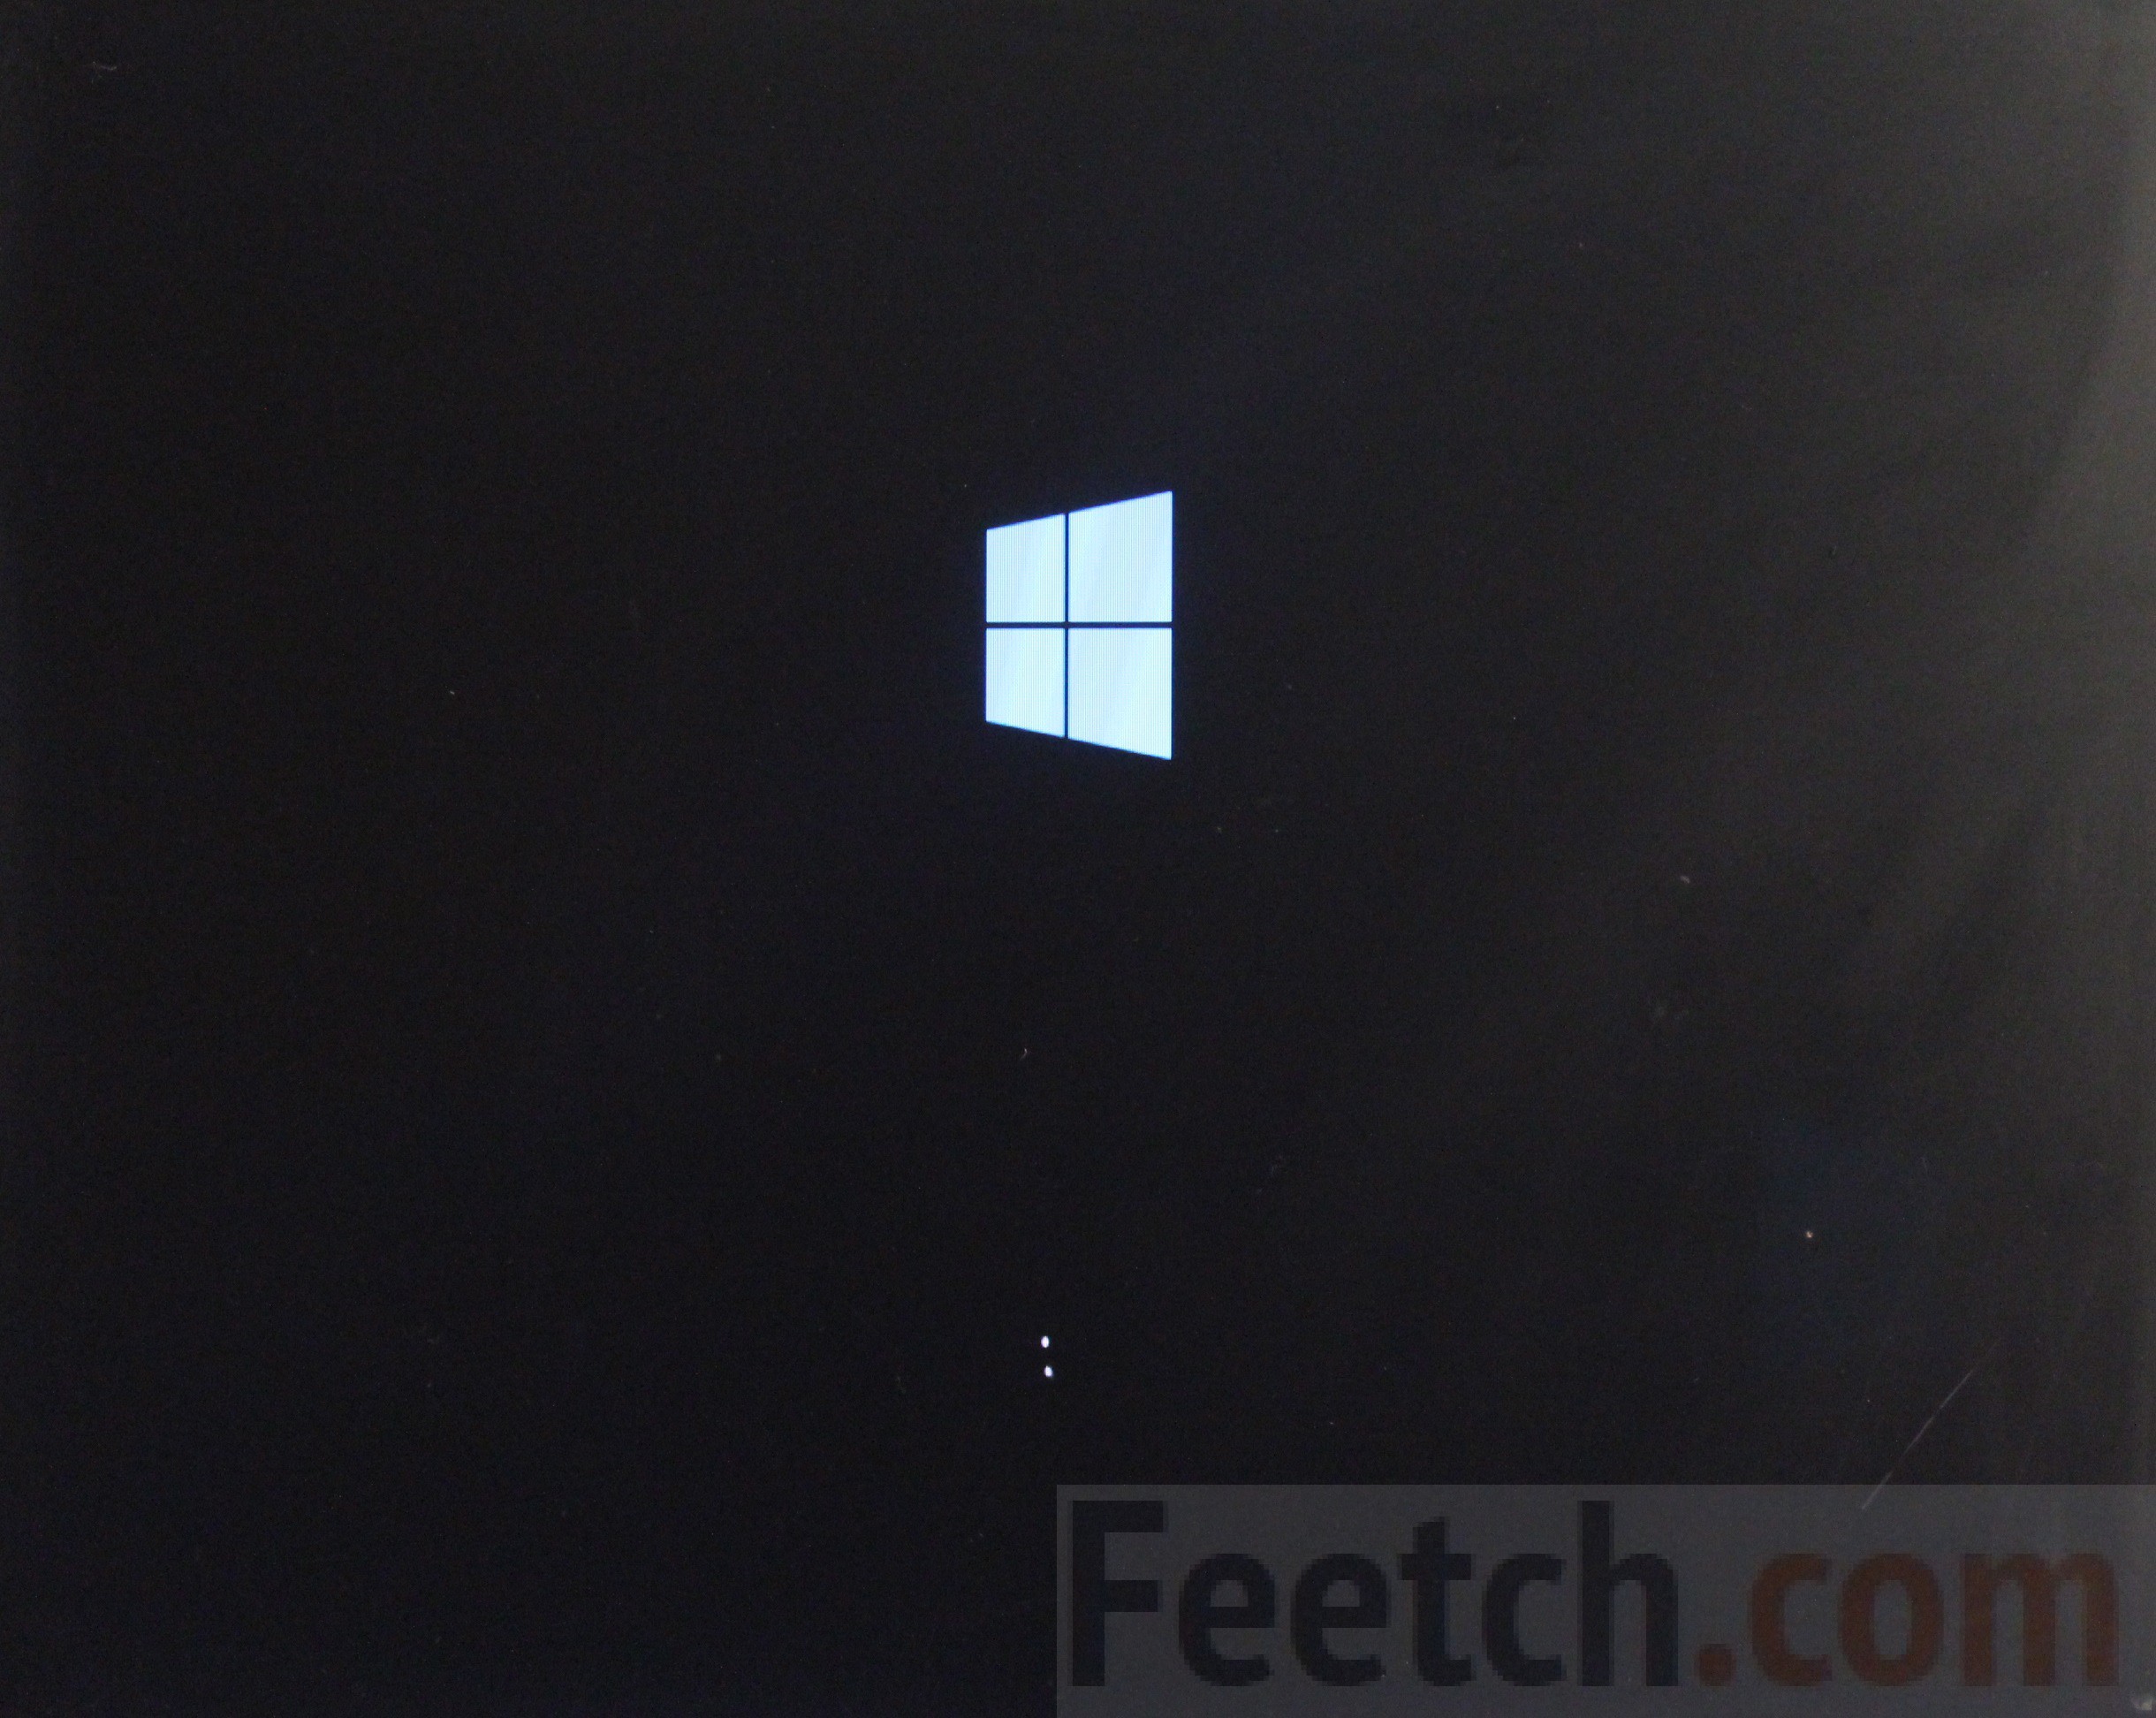 Устранение неполадок с черным или пустым экраном в Windows - Служба поддержки Майкрософт